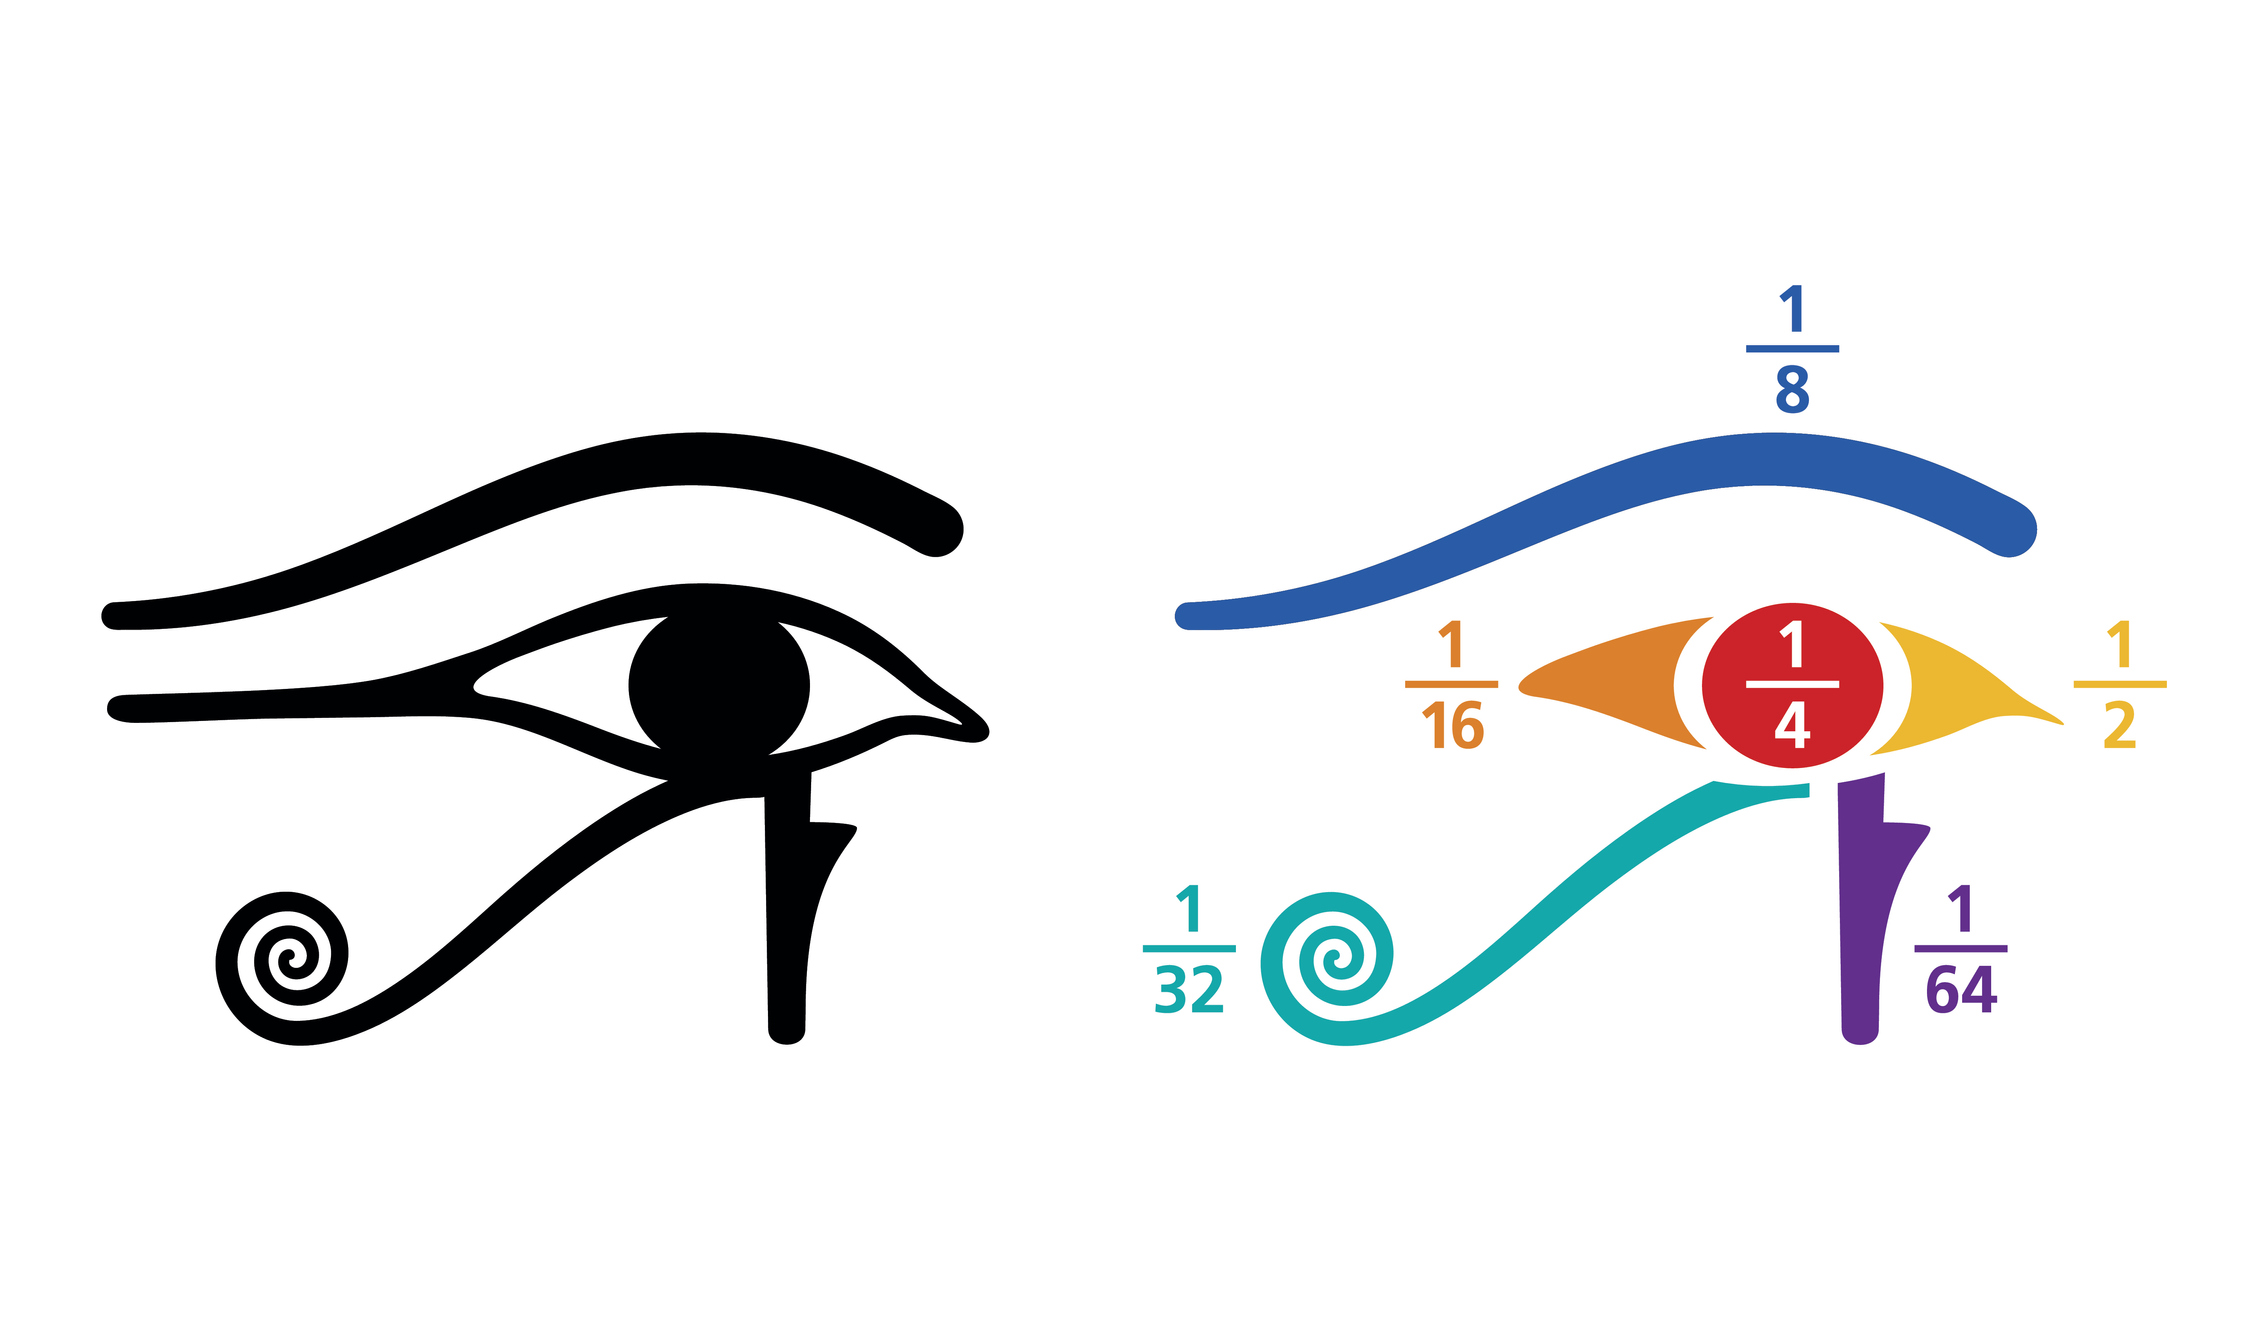 ochiul lui horus-simbolurile matematice